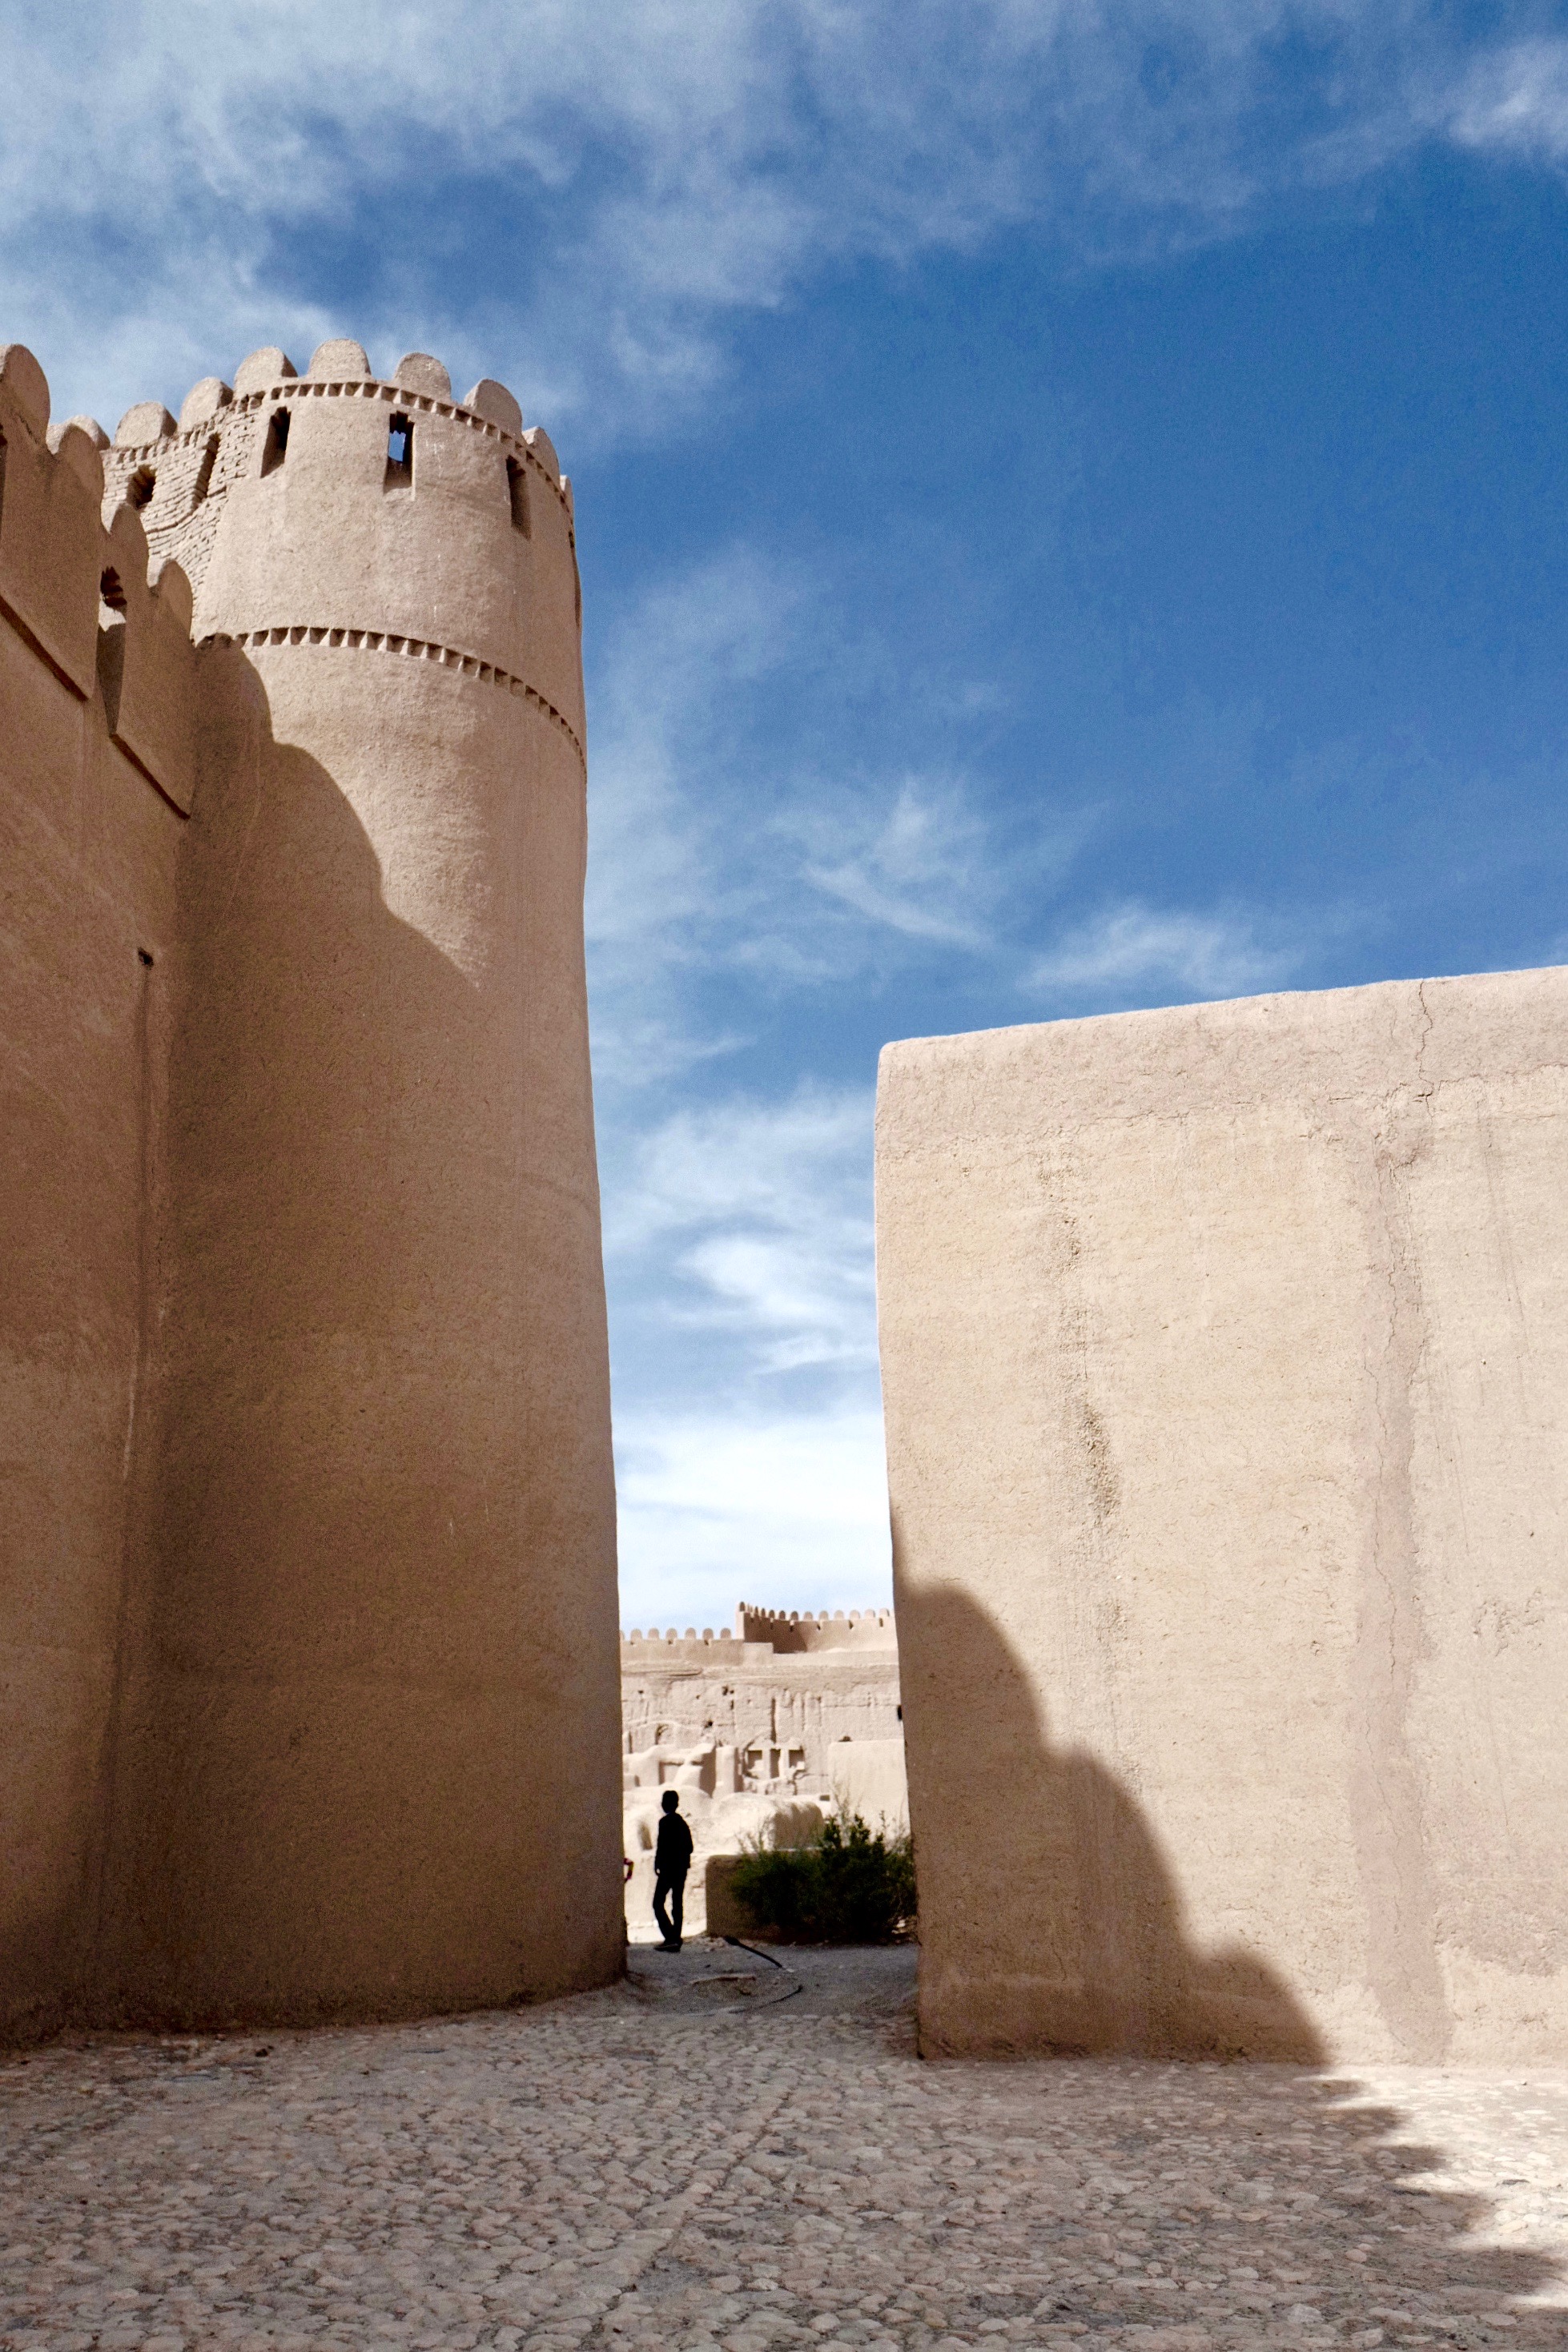 Руины крепости в Раене, основанной около 1500 лет назад, смотрятся причудливо на фоне реконструированных глинобитных стен